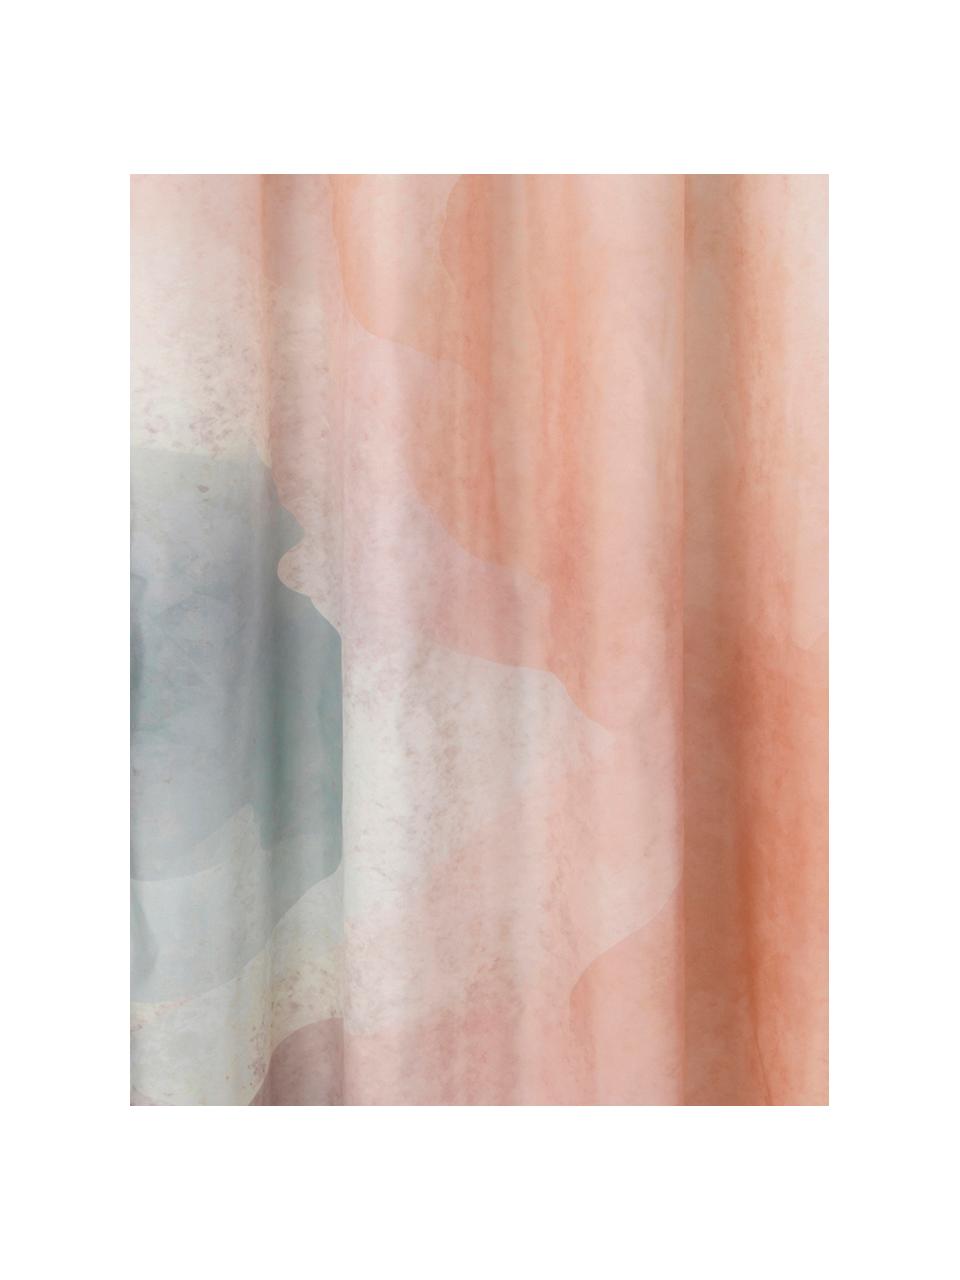 Duschvorhang Amelie mit abstraktem Muster, 100% Polyester, Mehrfarbig, B 180 x L 200 cm